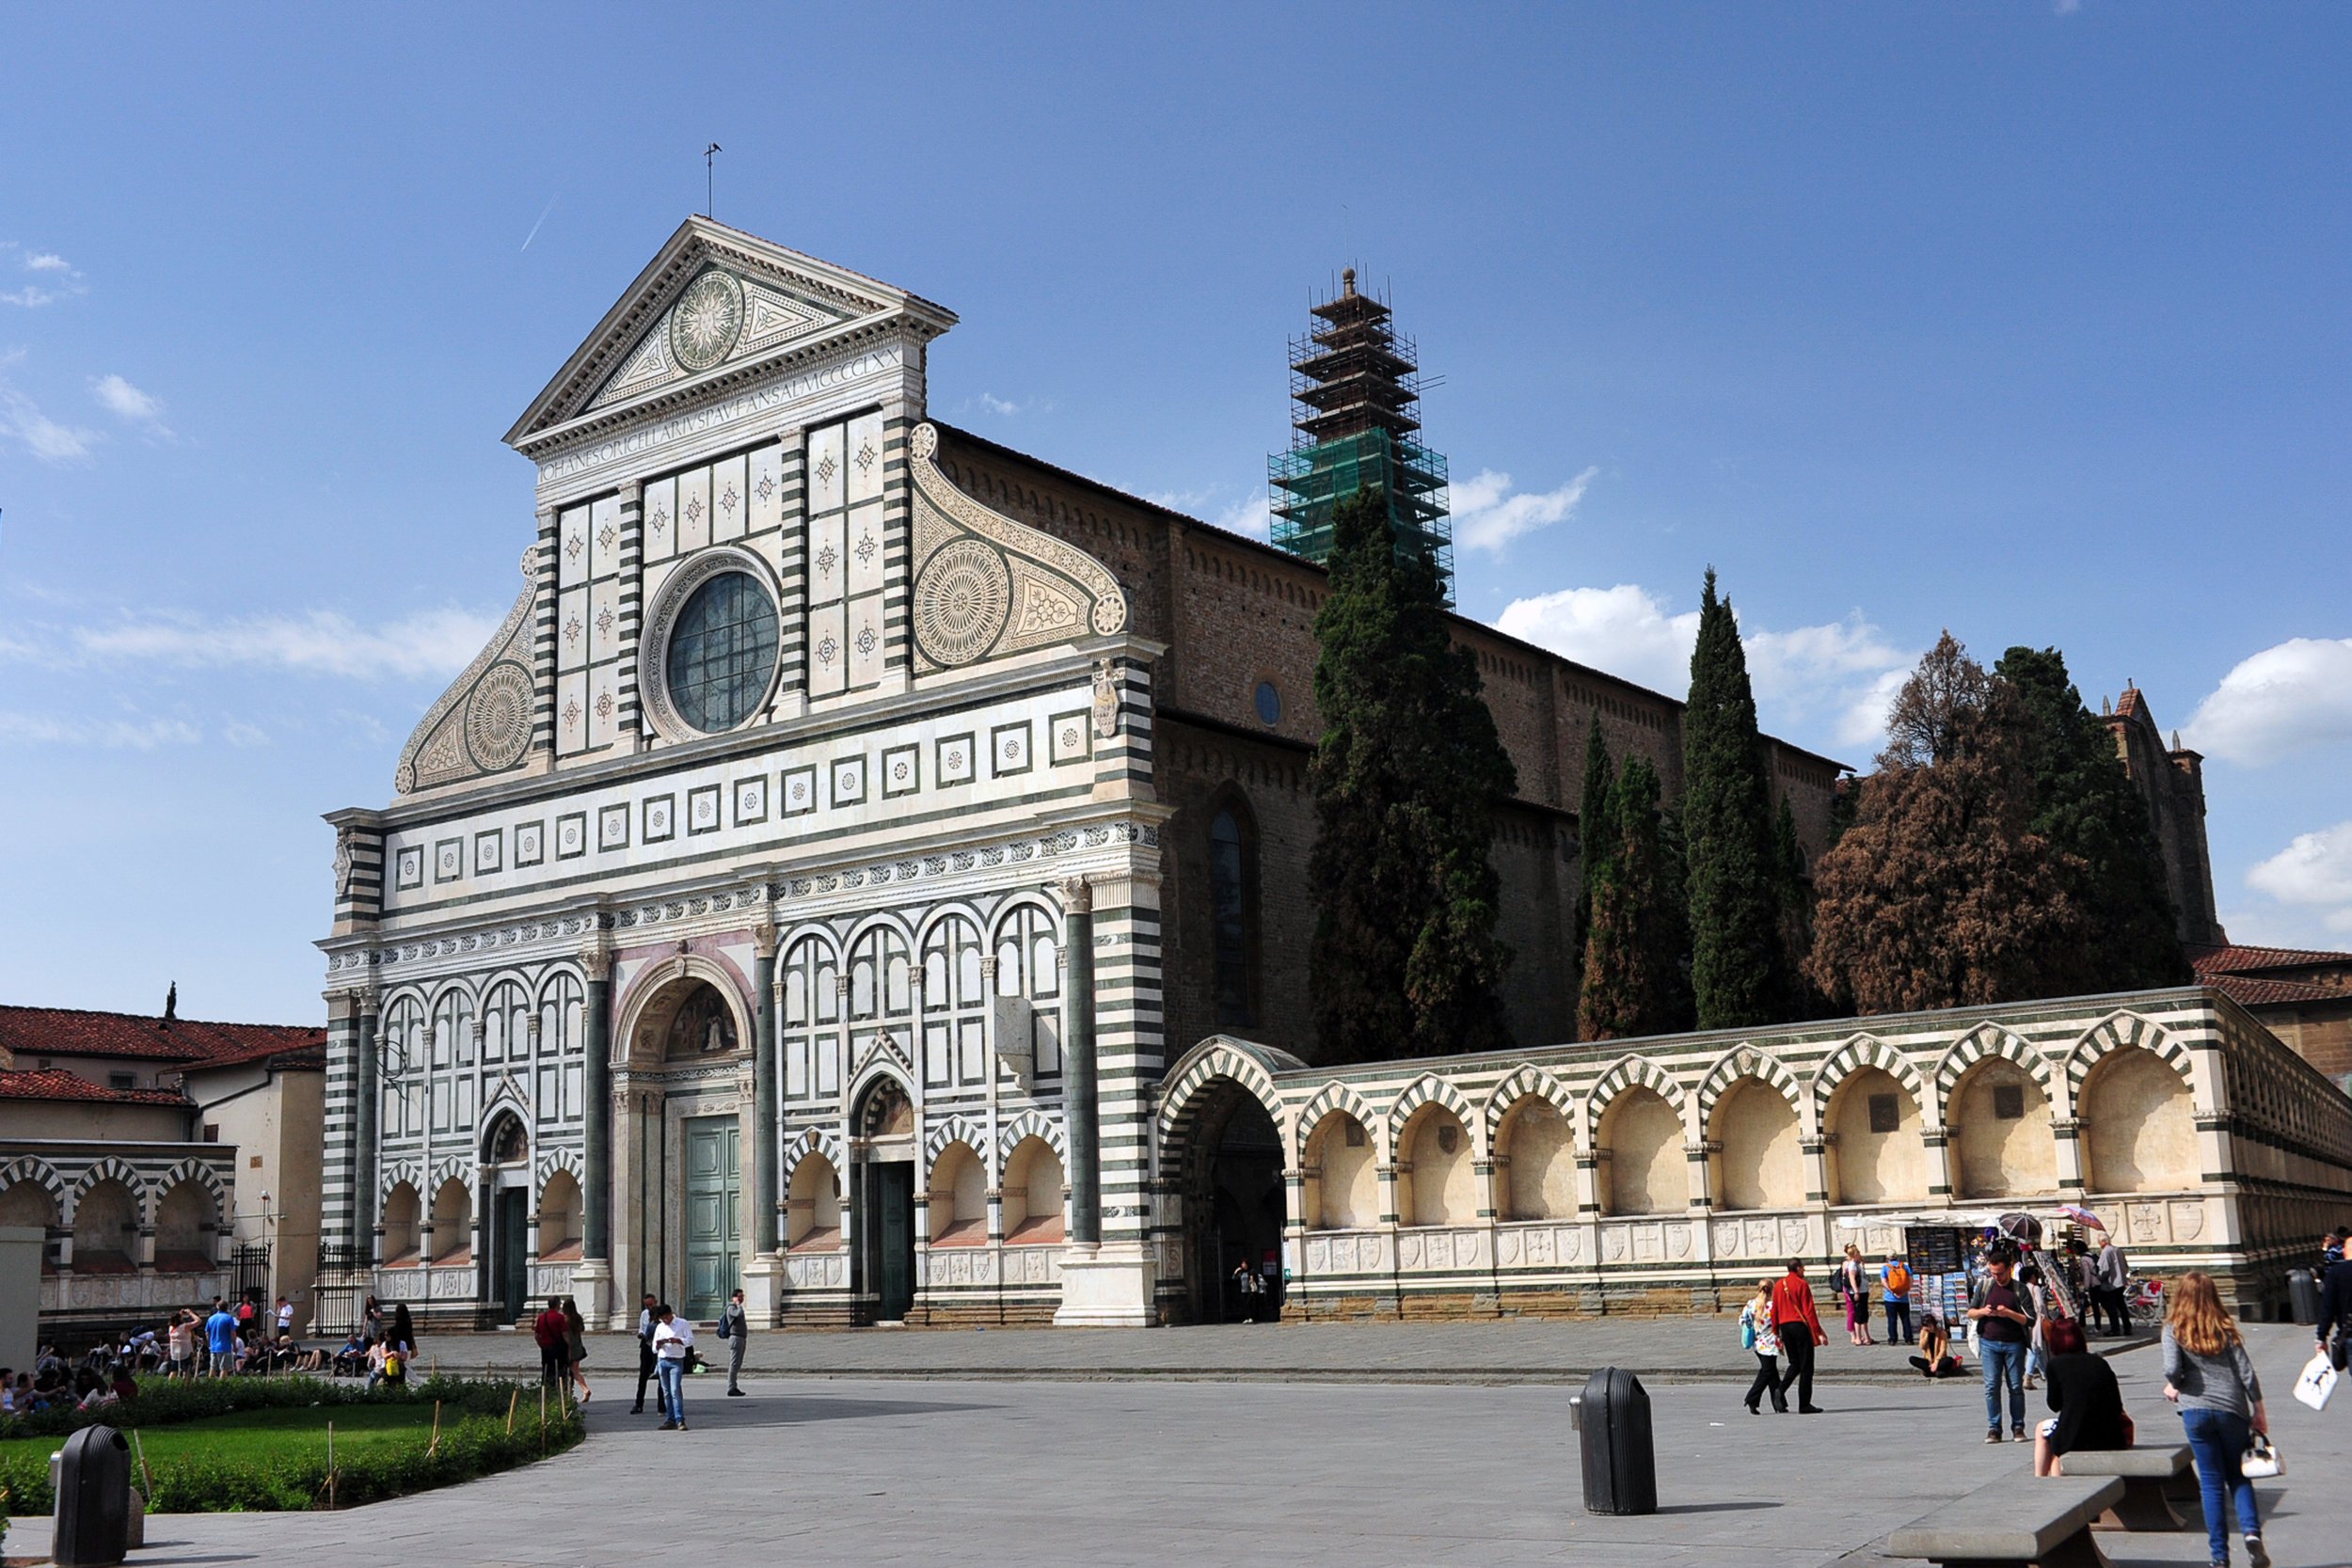 Santa Maria Novella Cathedral (near the train station and piazza bearing the same name)